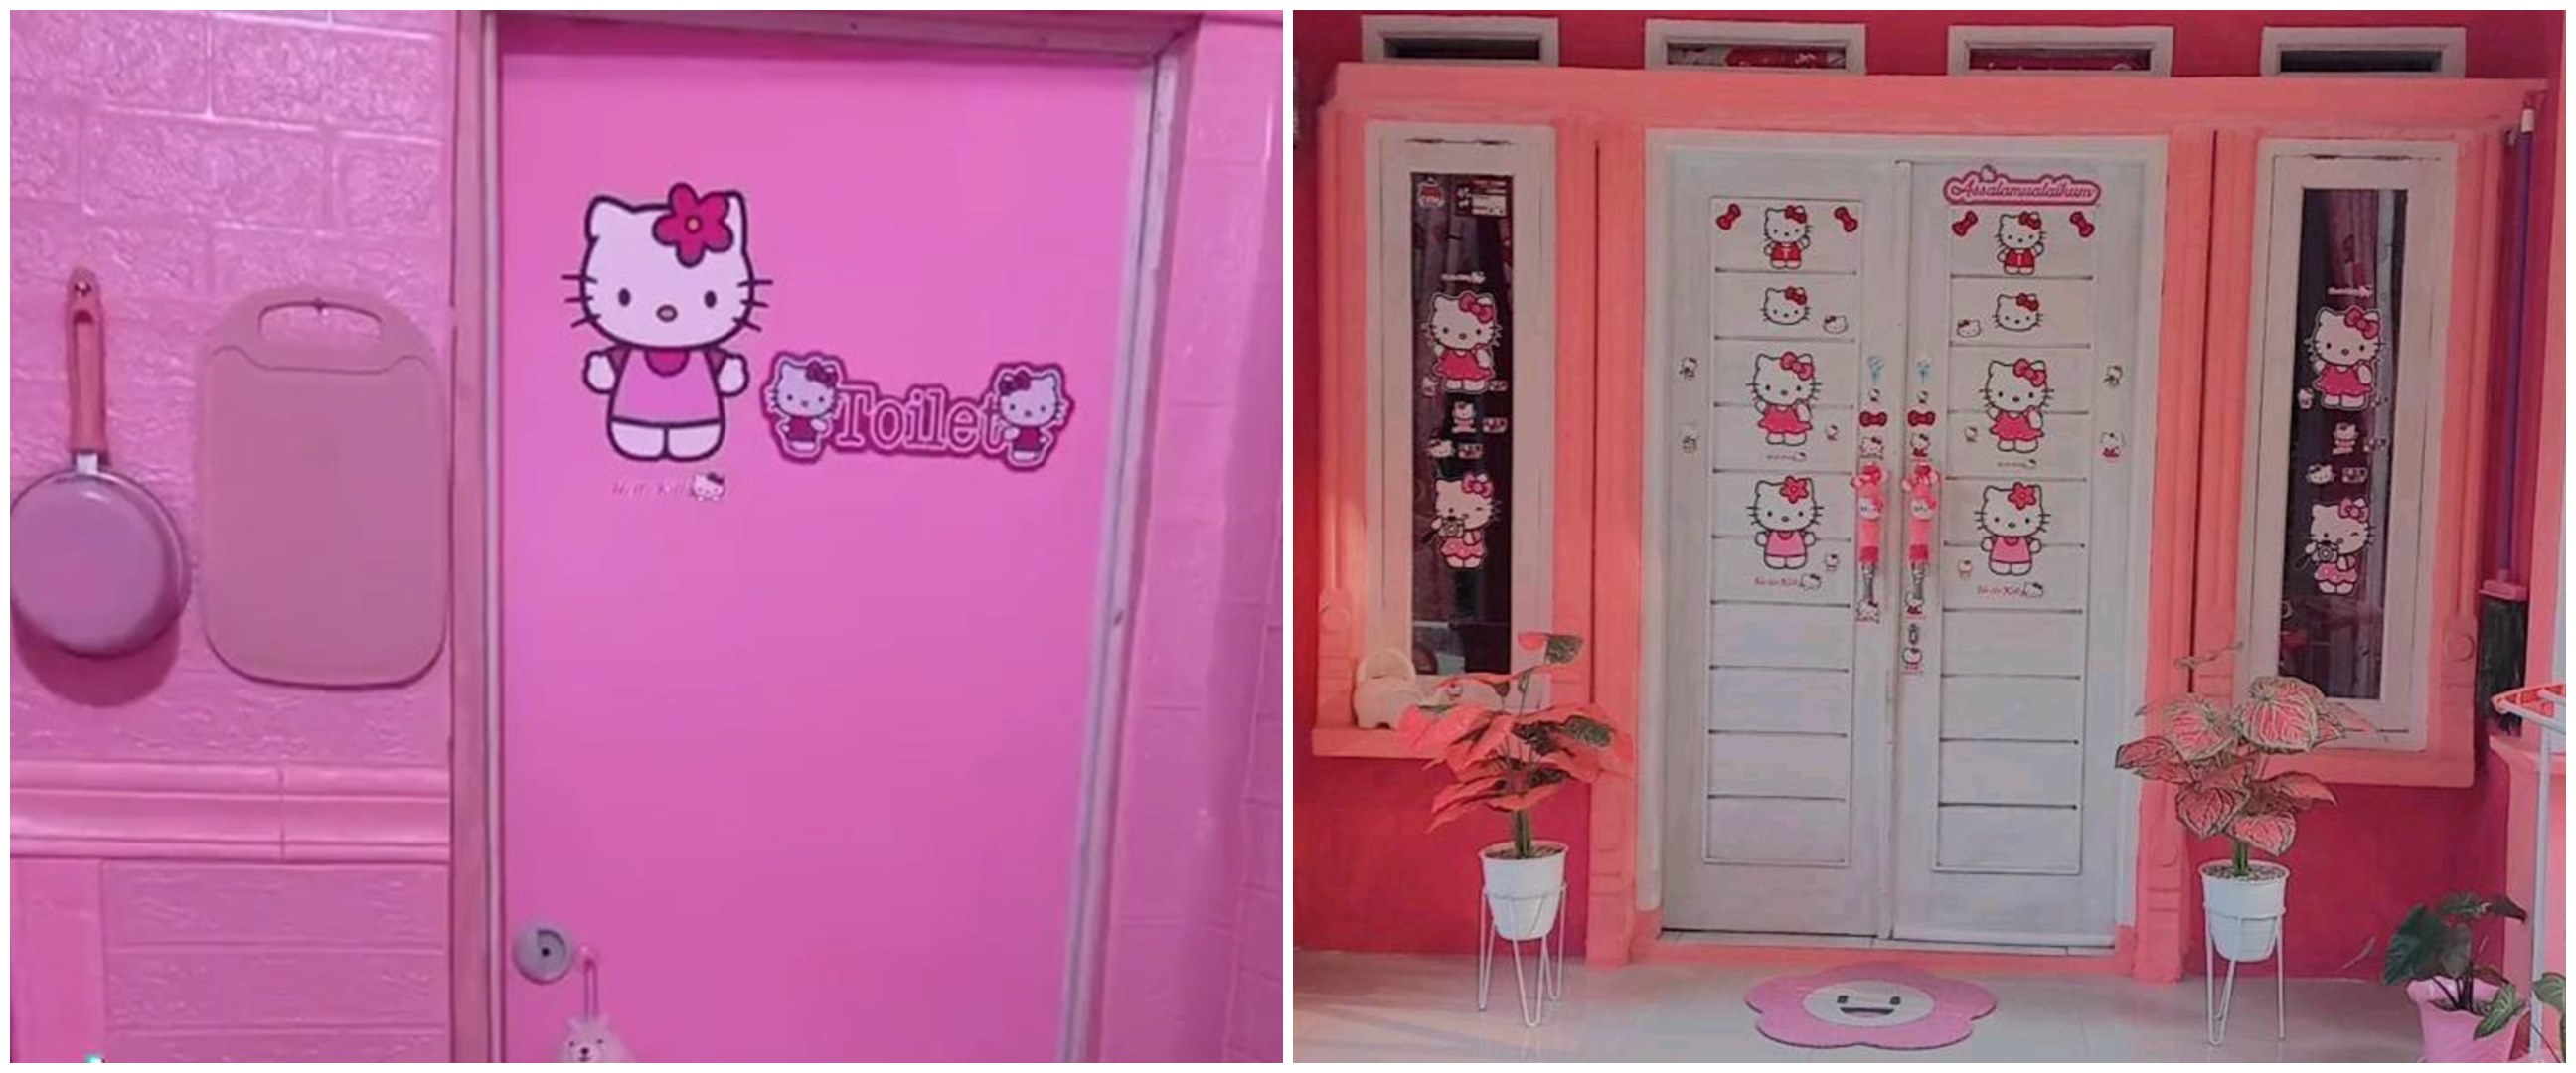 Pecinta minimalis minggir dulu, 11 potret makeover dapur tema Hello Kitty ini totalitas abis